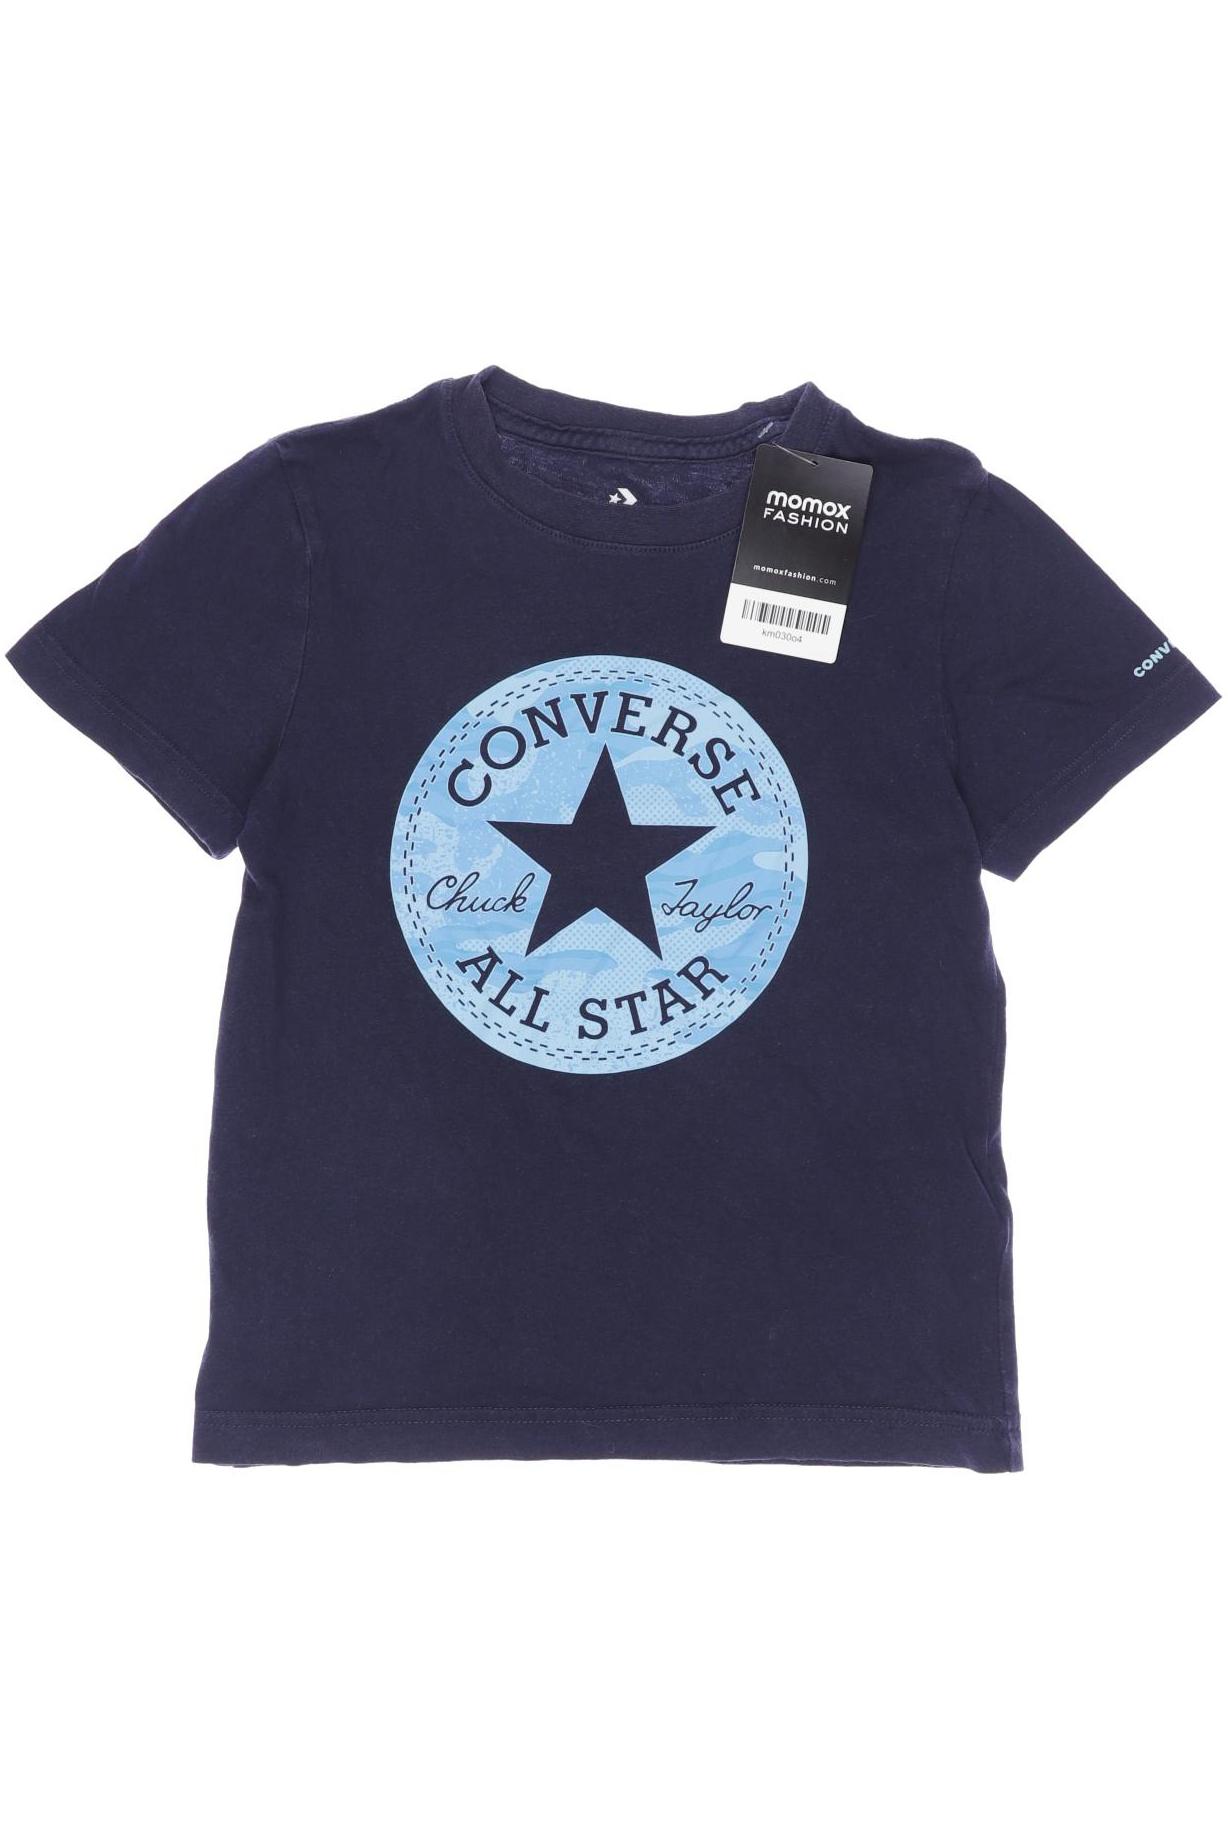 Converse Herren T-Shirt, marineblau, Gr. 116 von Converse